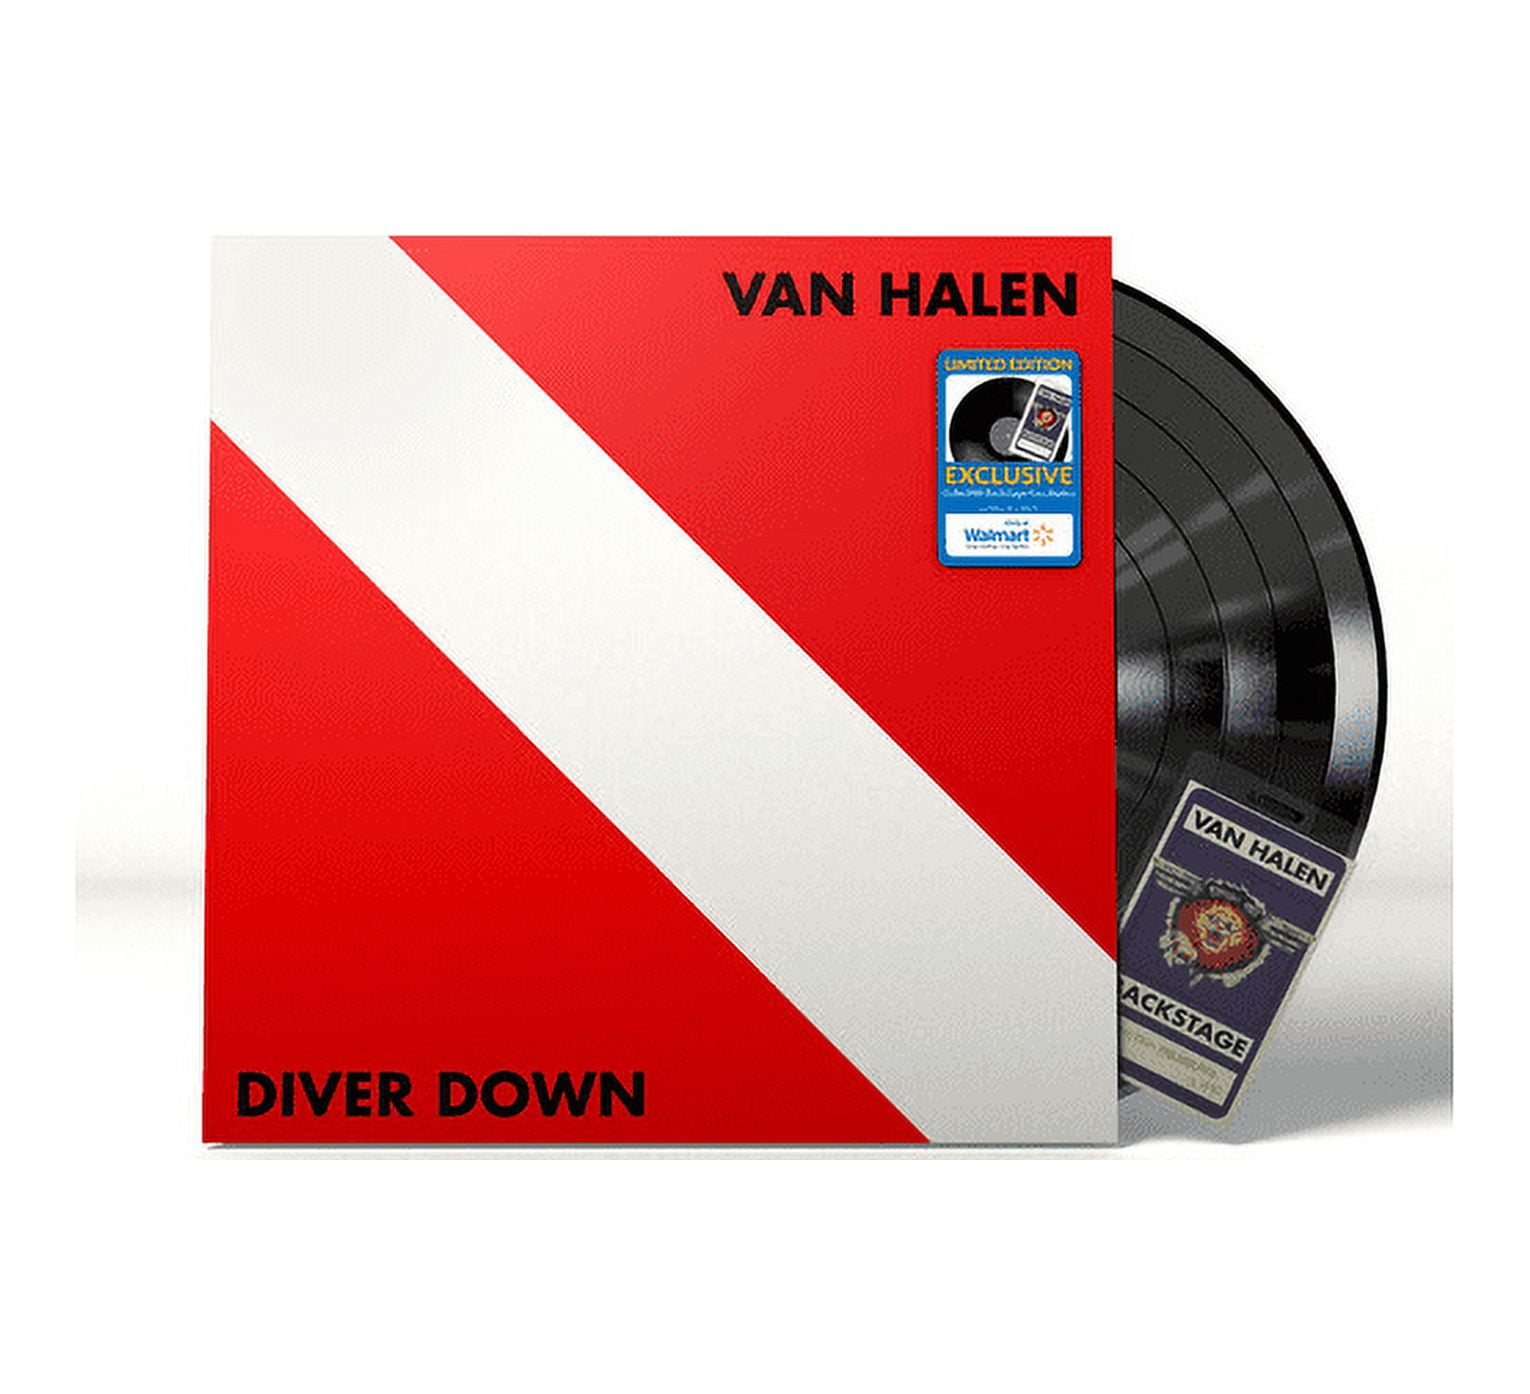 Disco Real - VAN HALEN Diver Down / VINILO DE ÉPOCA ESTADO: Usado VG+  EDICIÓN: US / 1982 $35.900.- Solicita el catálogo con mas de 500 VINILOS DE  EPOCA por interno o